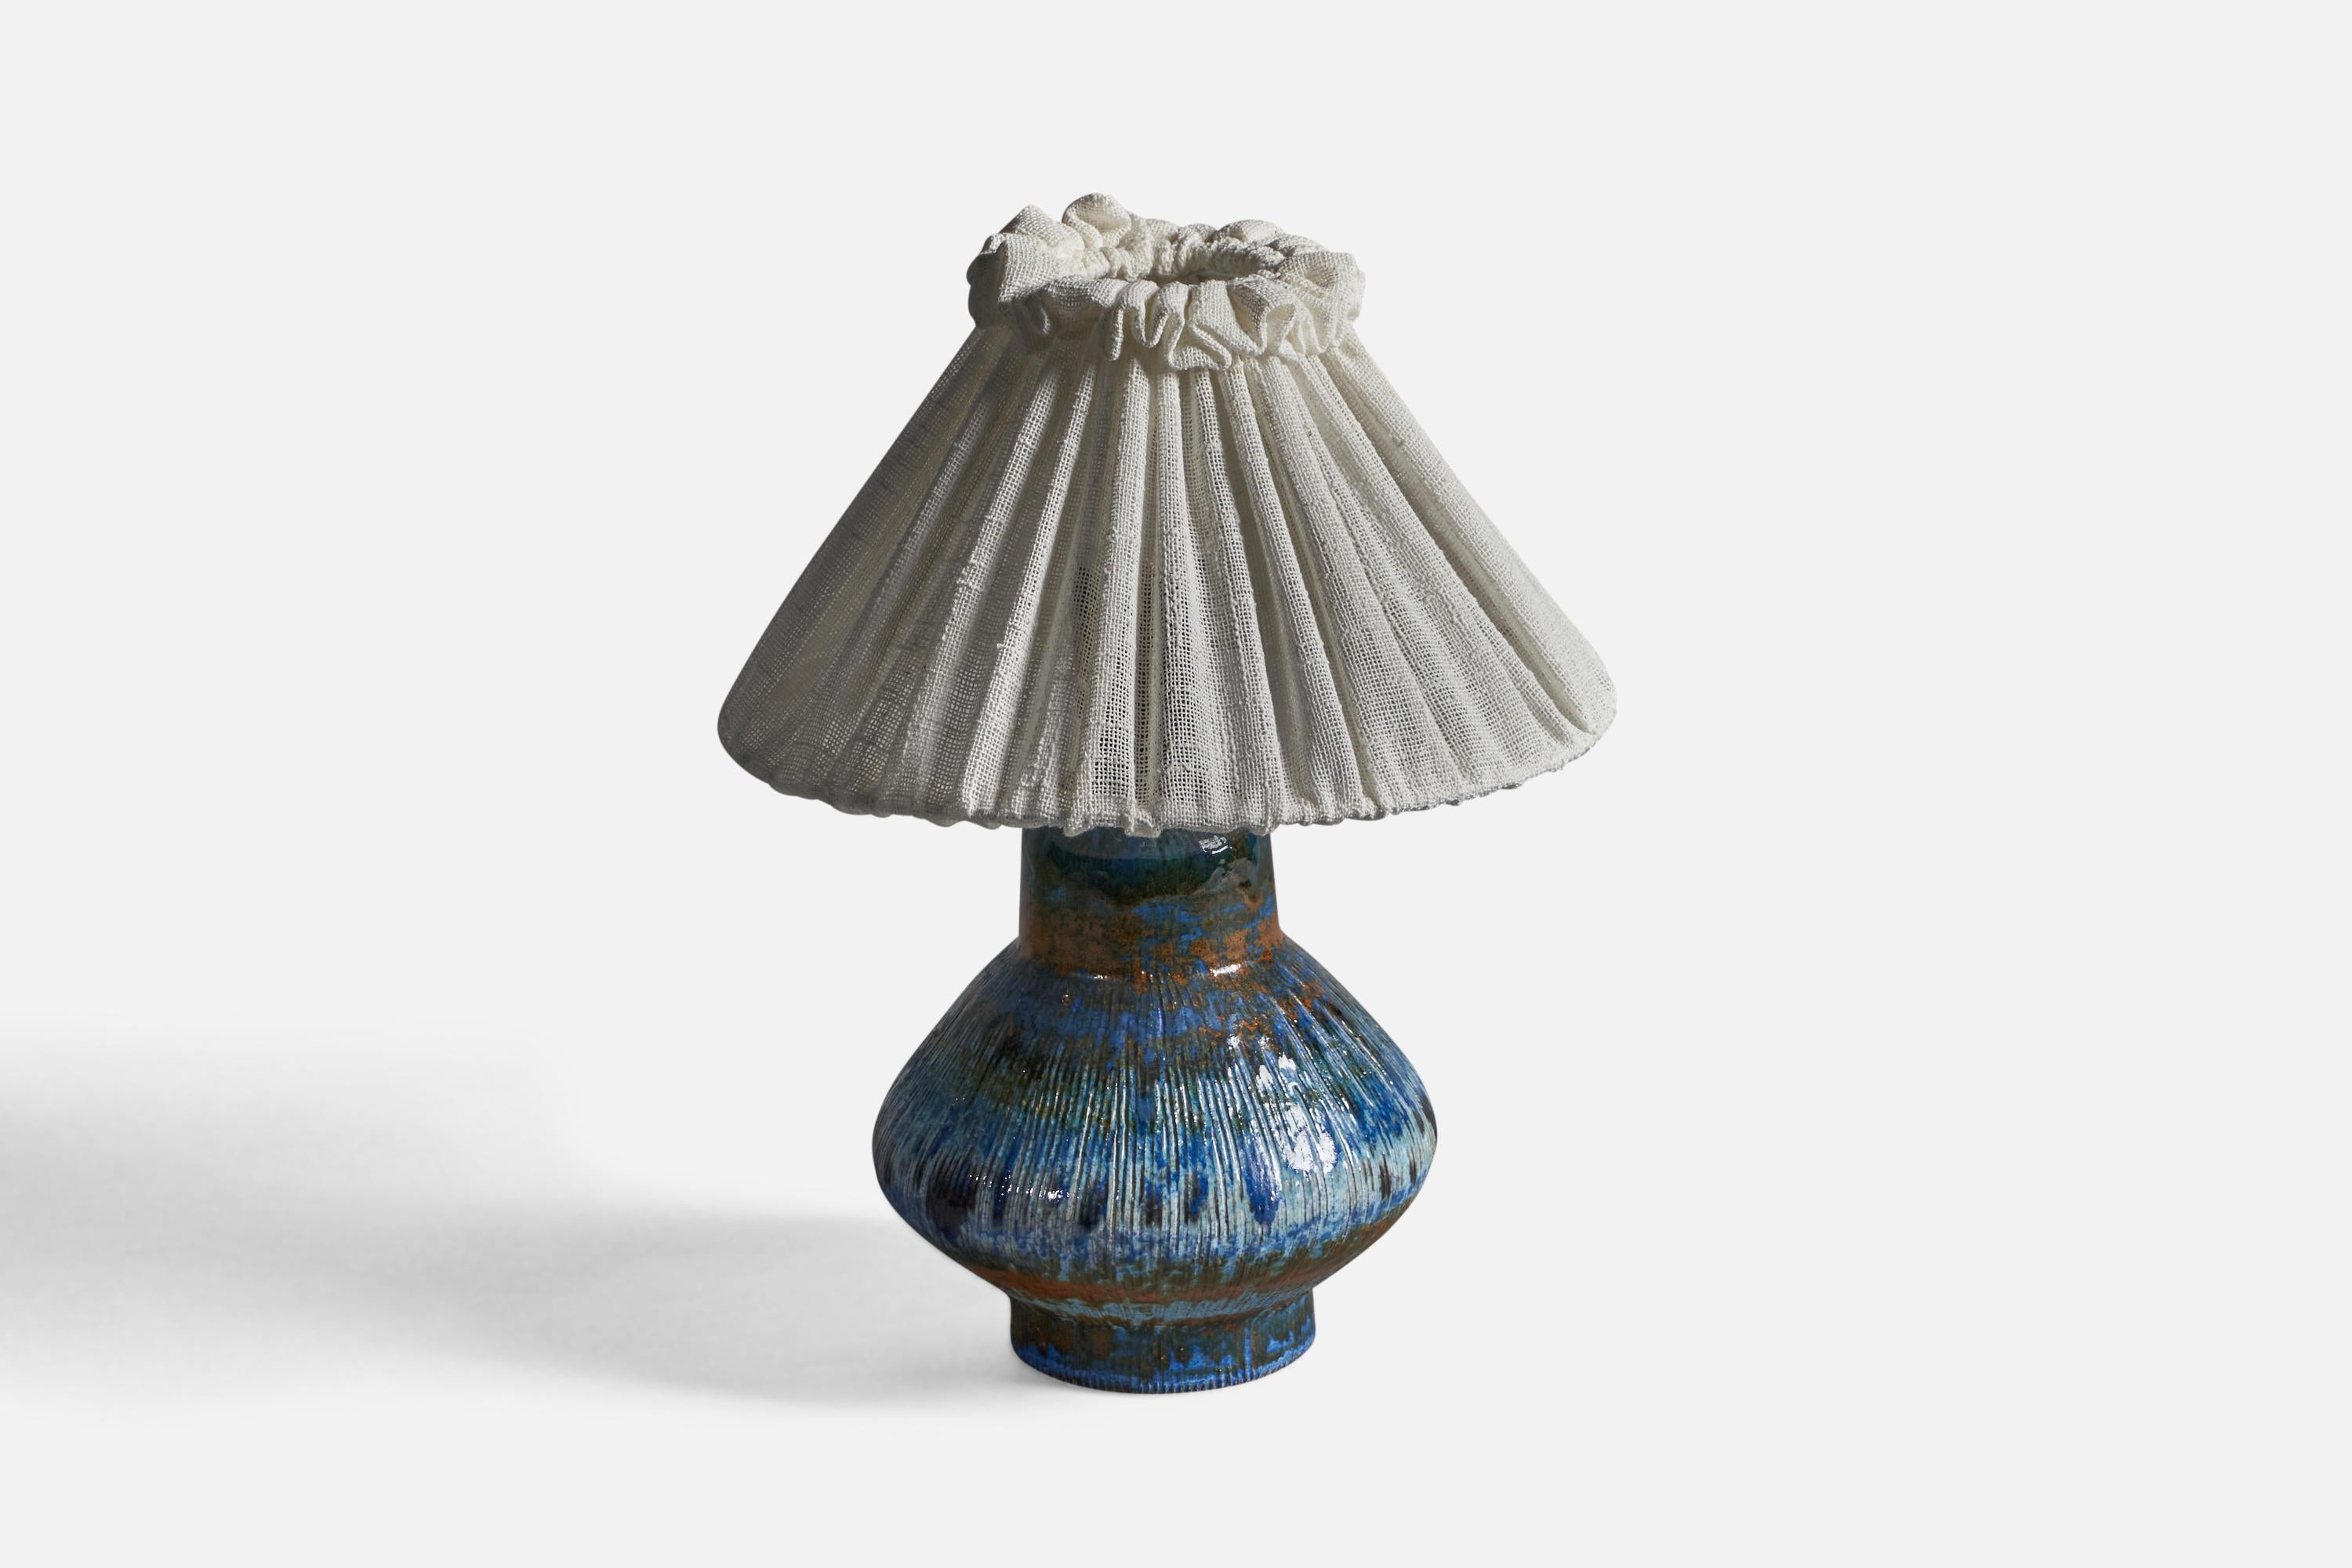 Tischlampe aus blau-rot-braun glasiertem Steingut und Stoff, entworfen und hergestellt von Tilgmans, Schweden, ca. 1960er Jahre.

Gesamtabmessungen (Zoll): 13,5